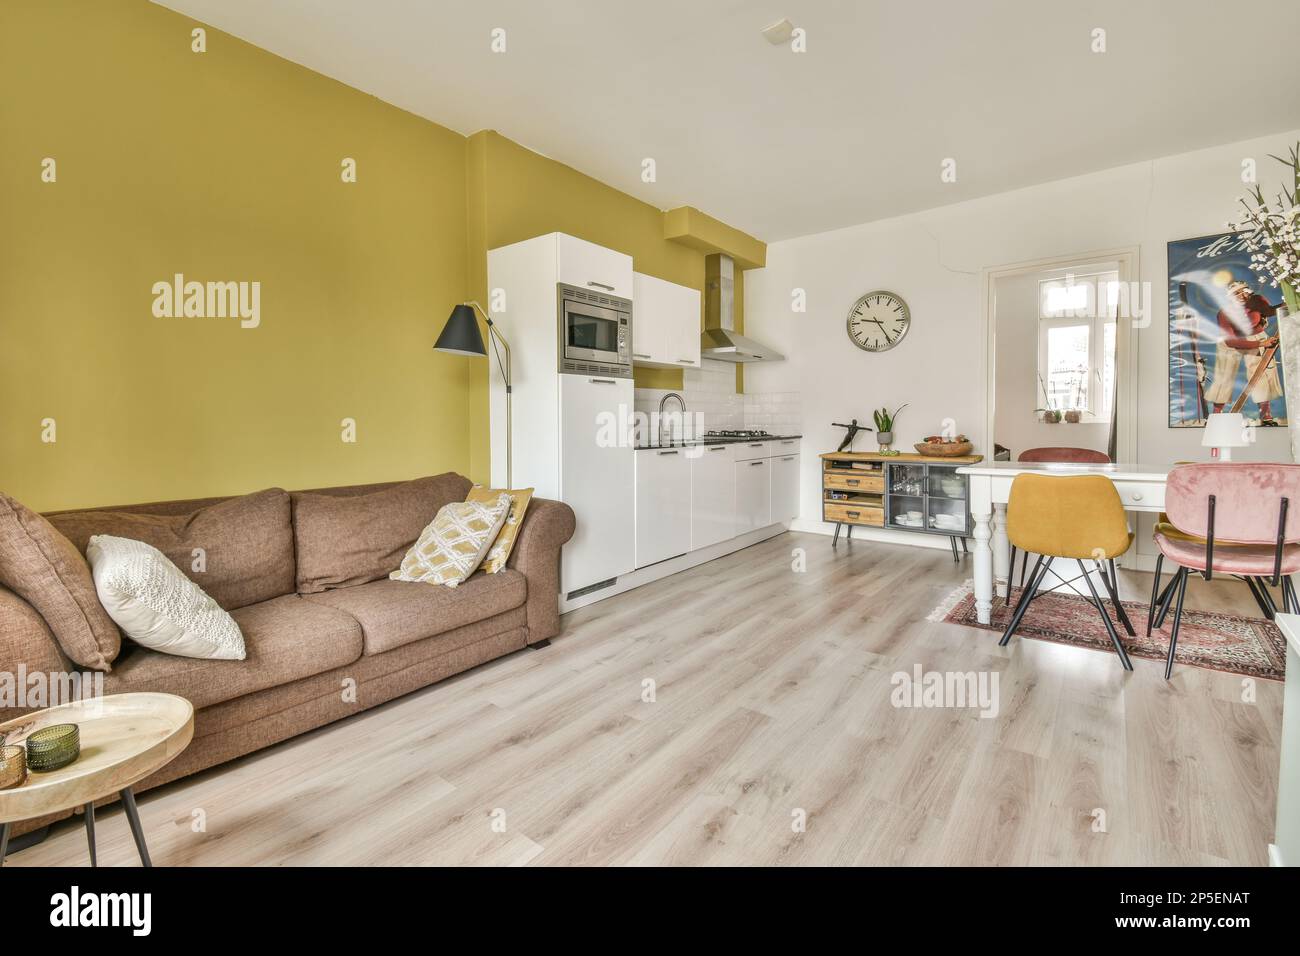 Ein Wohnzimmer mit gelben Wänden und Holzfußboden, einschließlich einer braunen Couch und zwei Stühlen in der Mitte des Zimmers Stockfoto